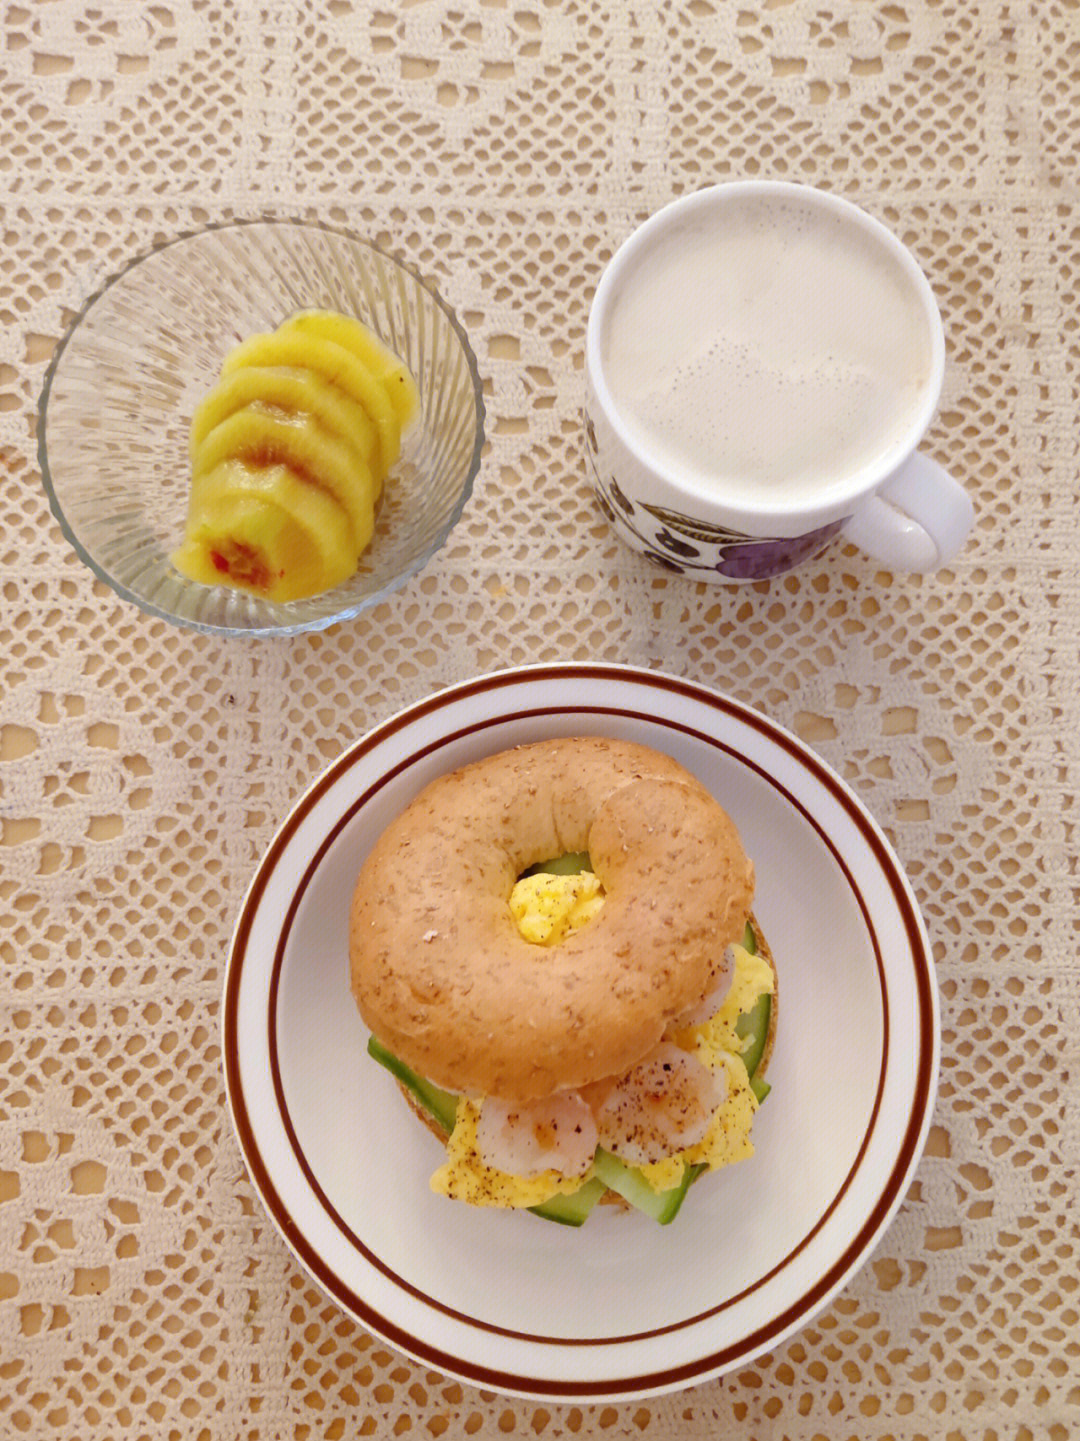 96日西式早餐虾仁滑蛋贝果三明治